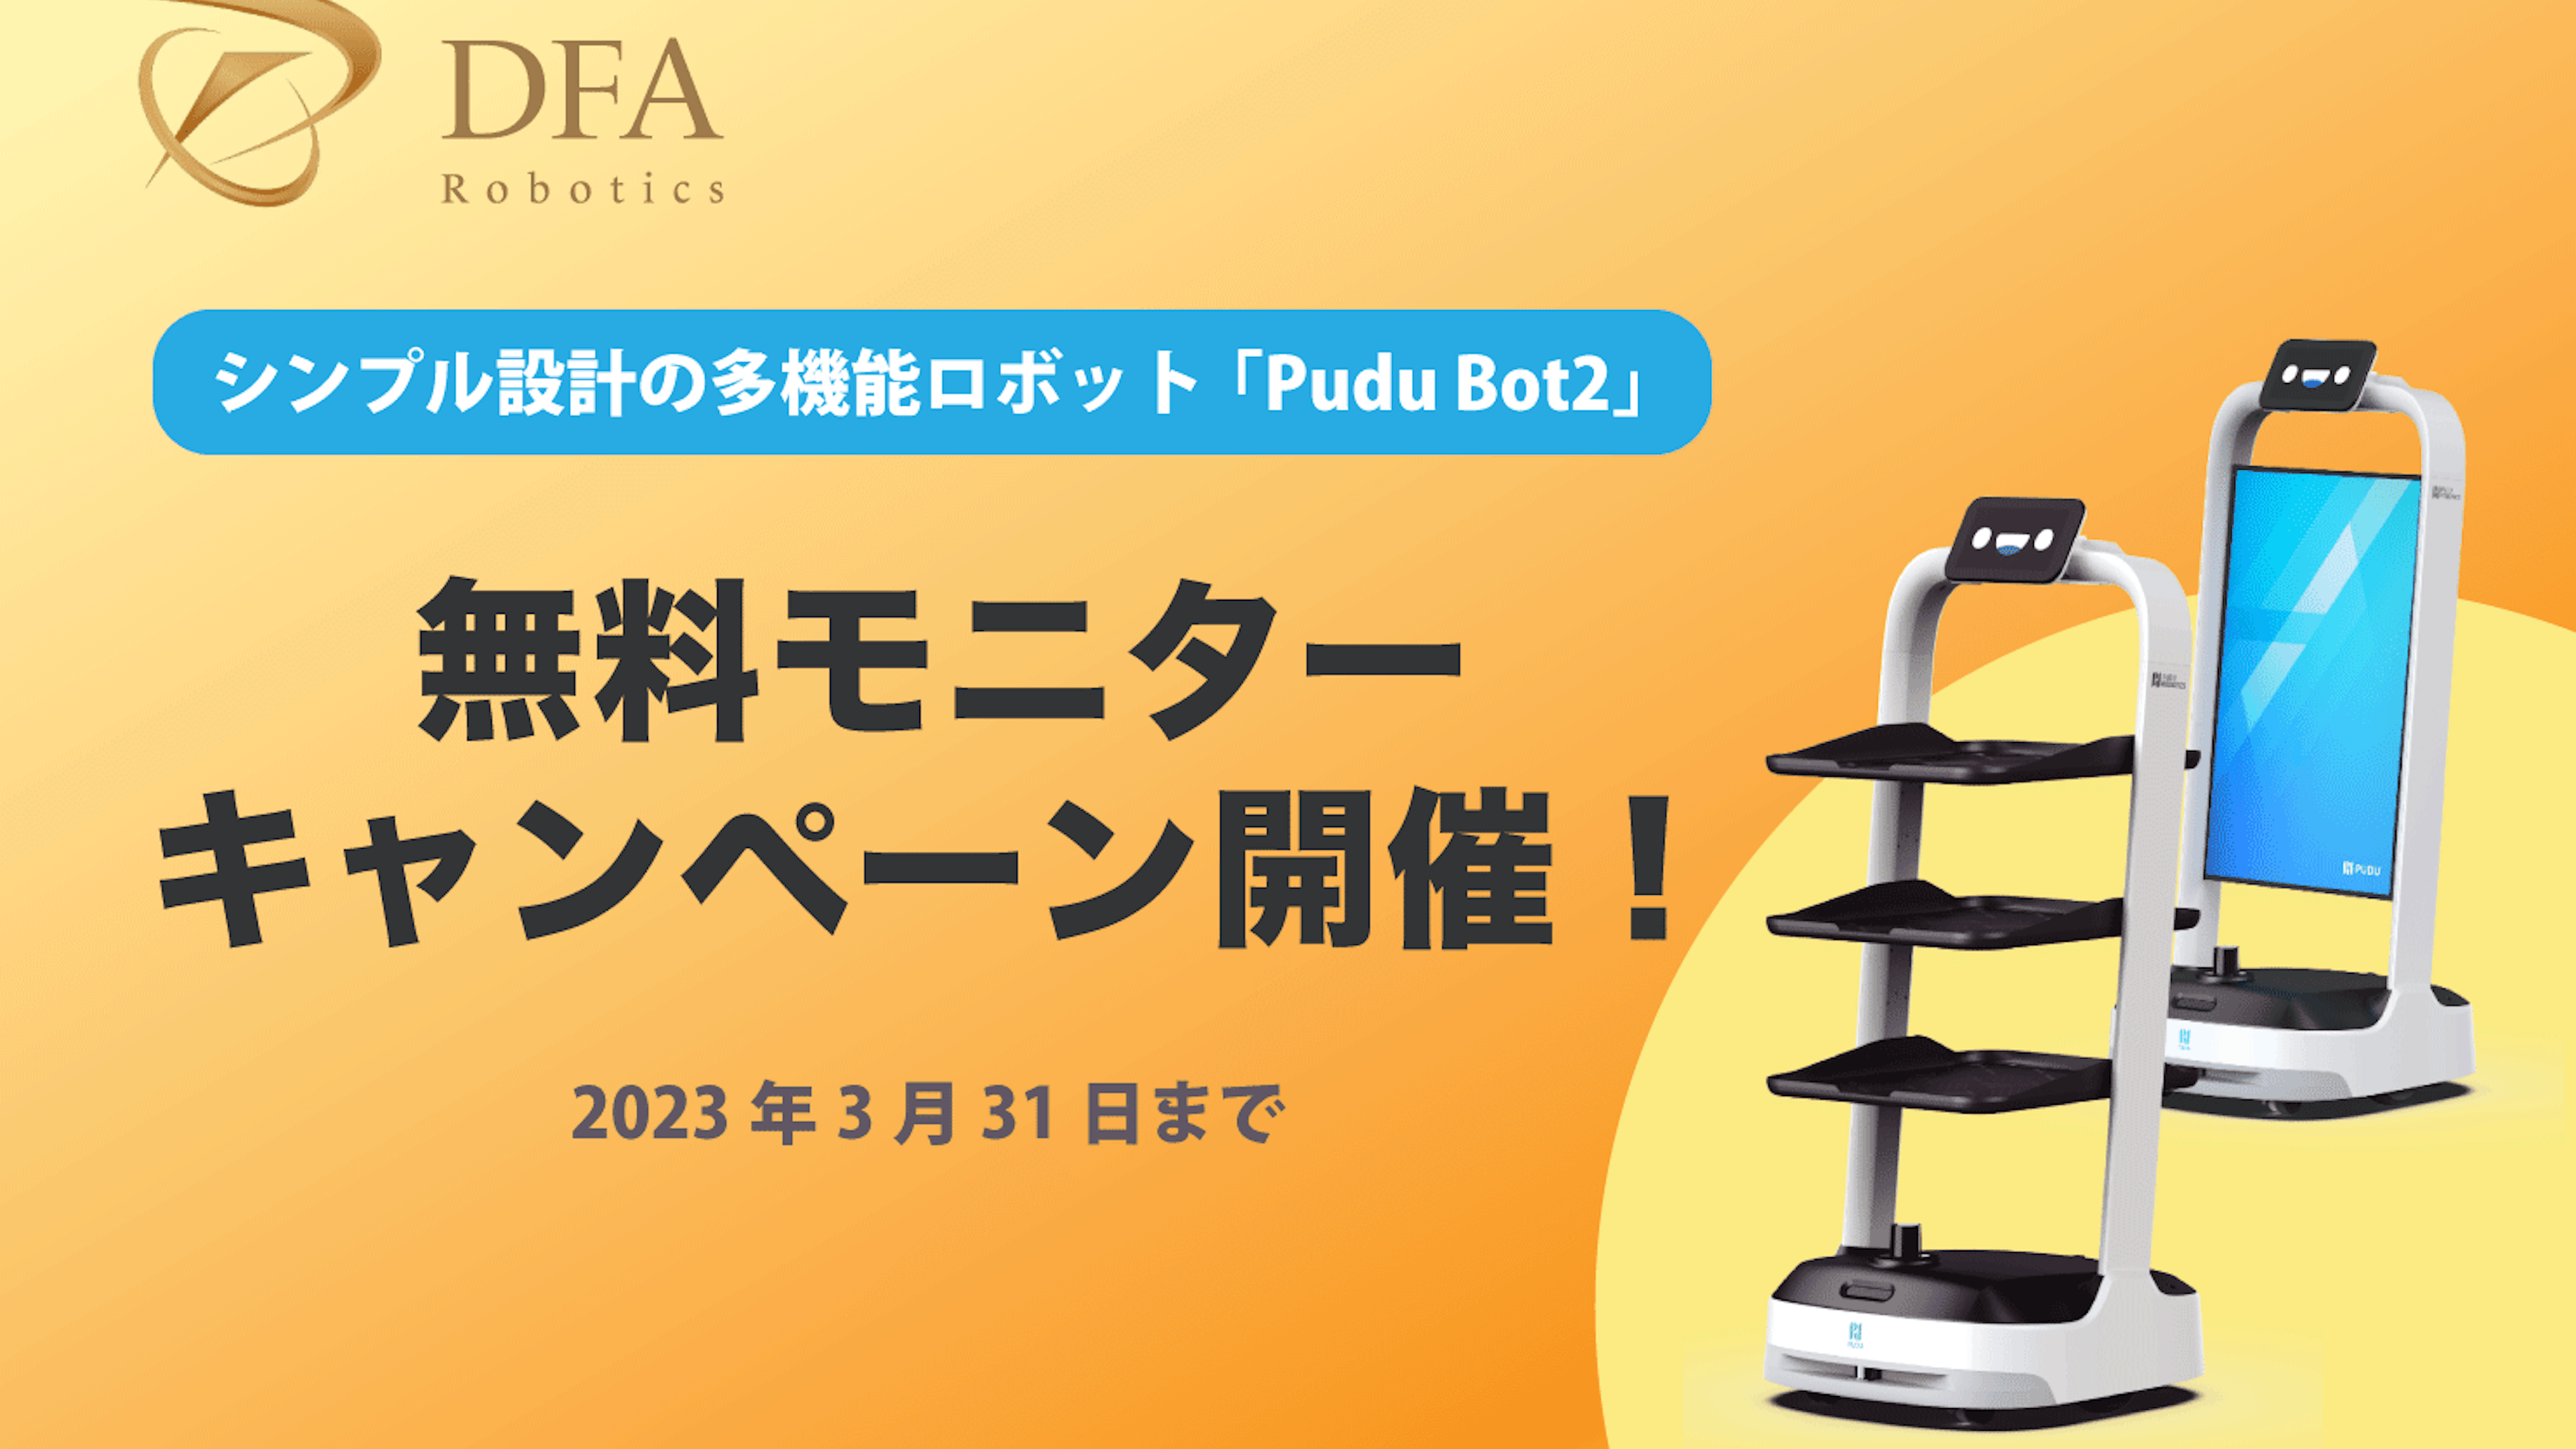 シンプル設計の多機能ロボット「Pudu Bot２（プードゥーボットツー）」の取り扱いがスタート、テスト導入の無料モニターキャンペーン開催